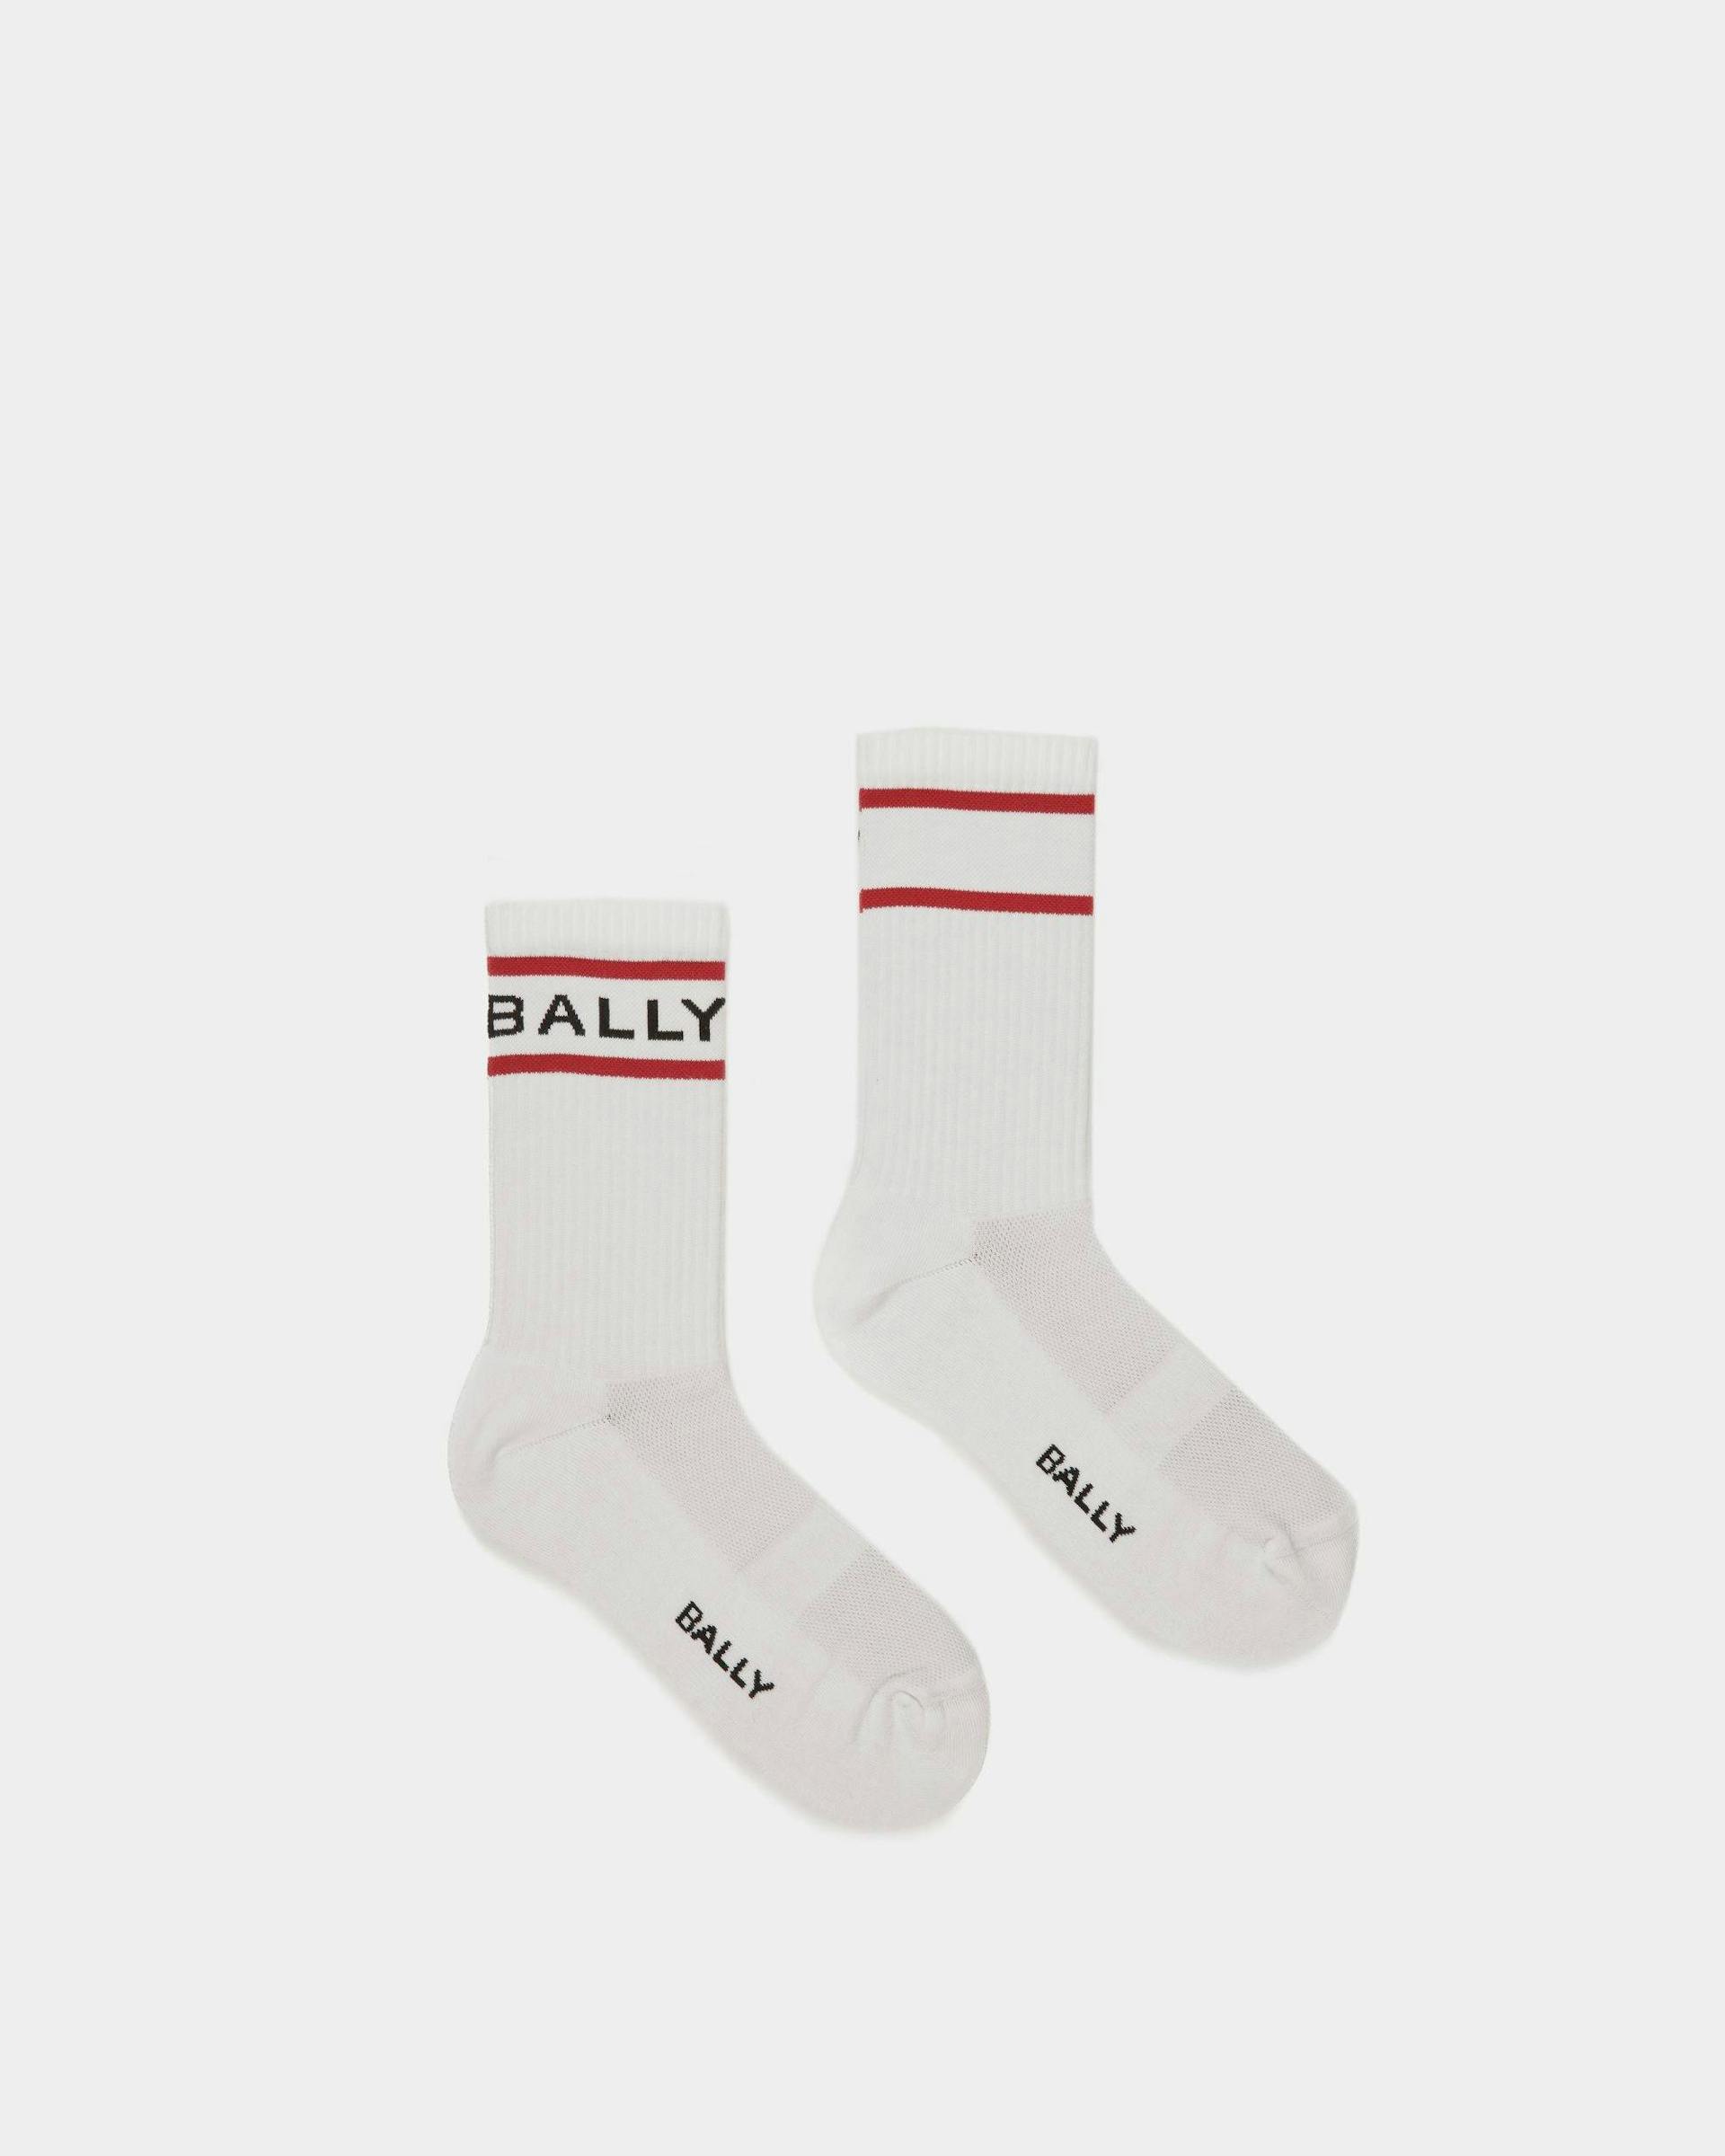 Bally Stripe Socken In Weiß und Tiefrubinrot - Herren - Bally - 01